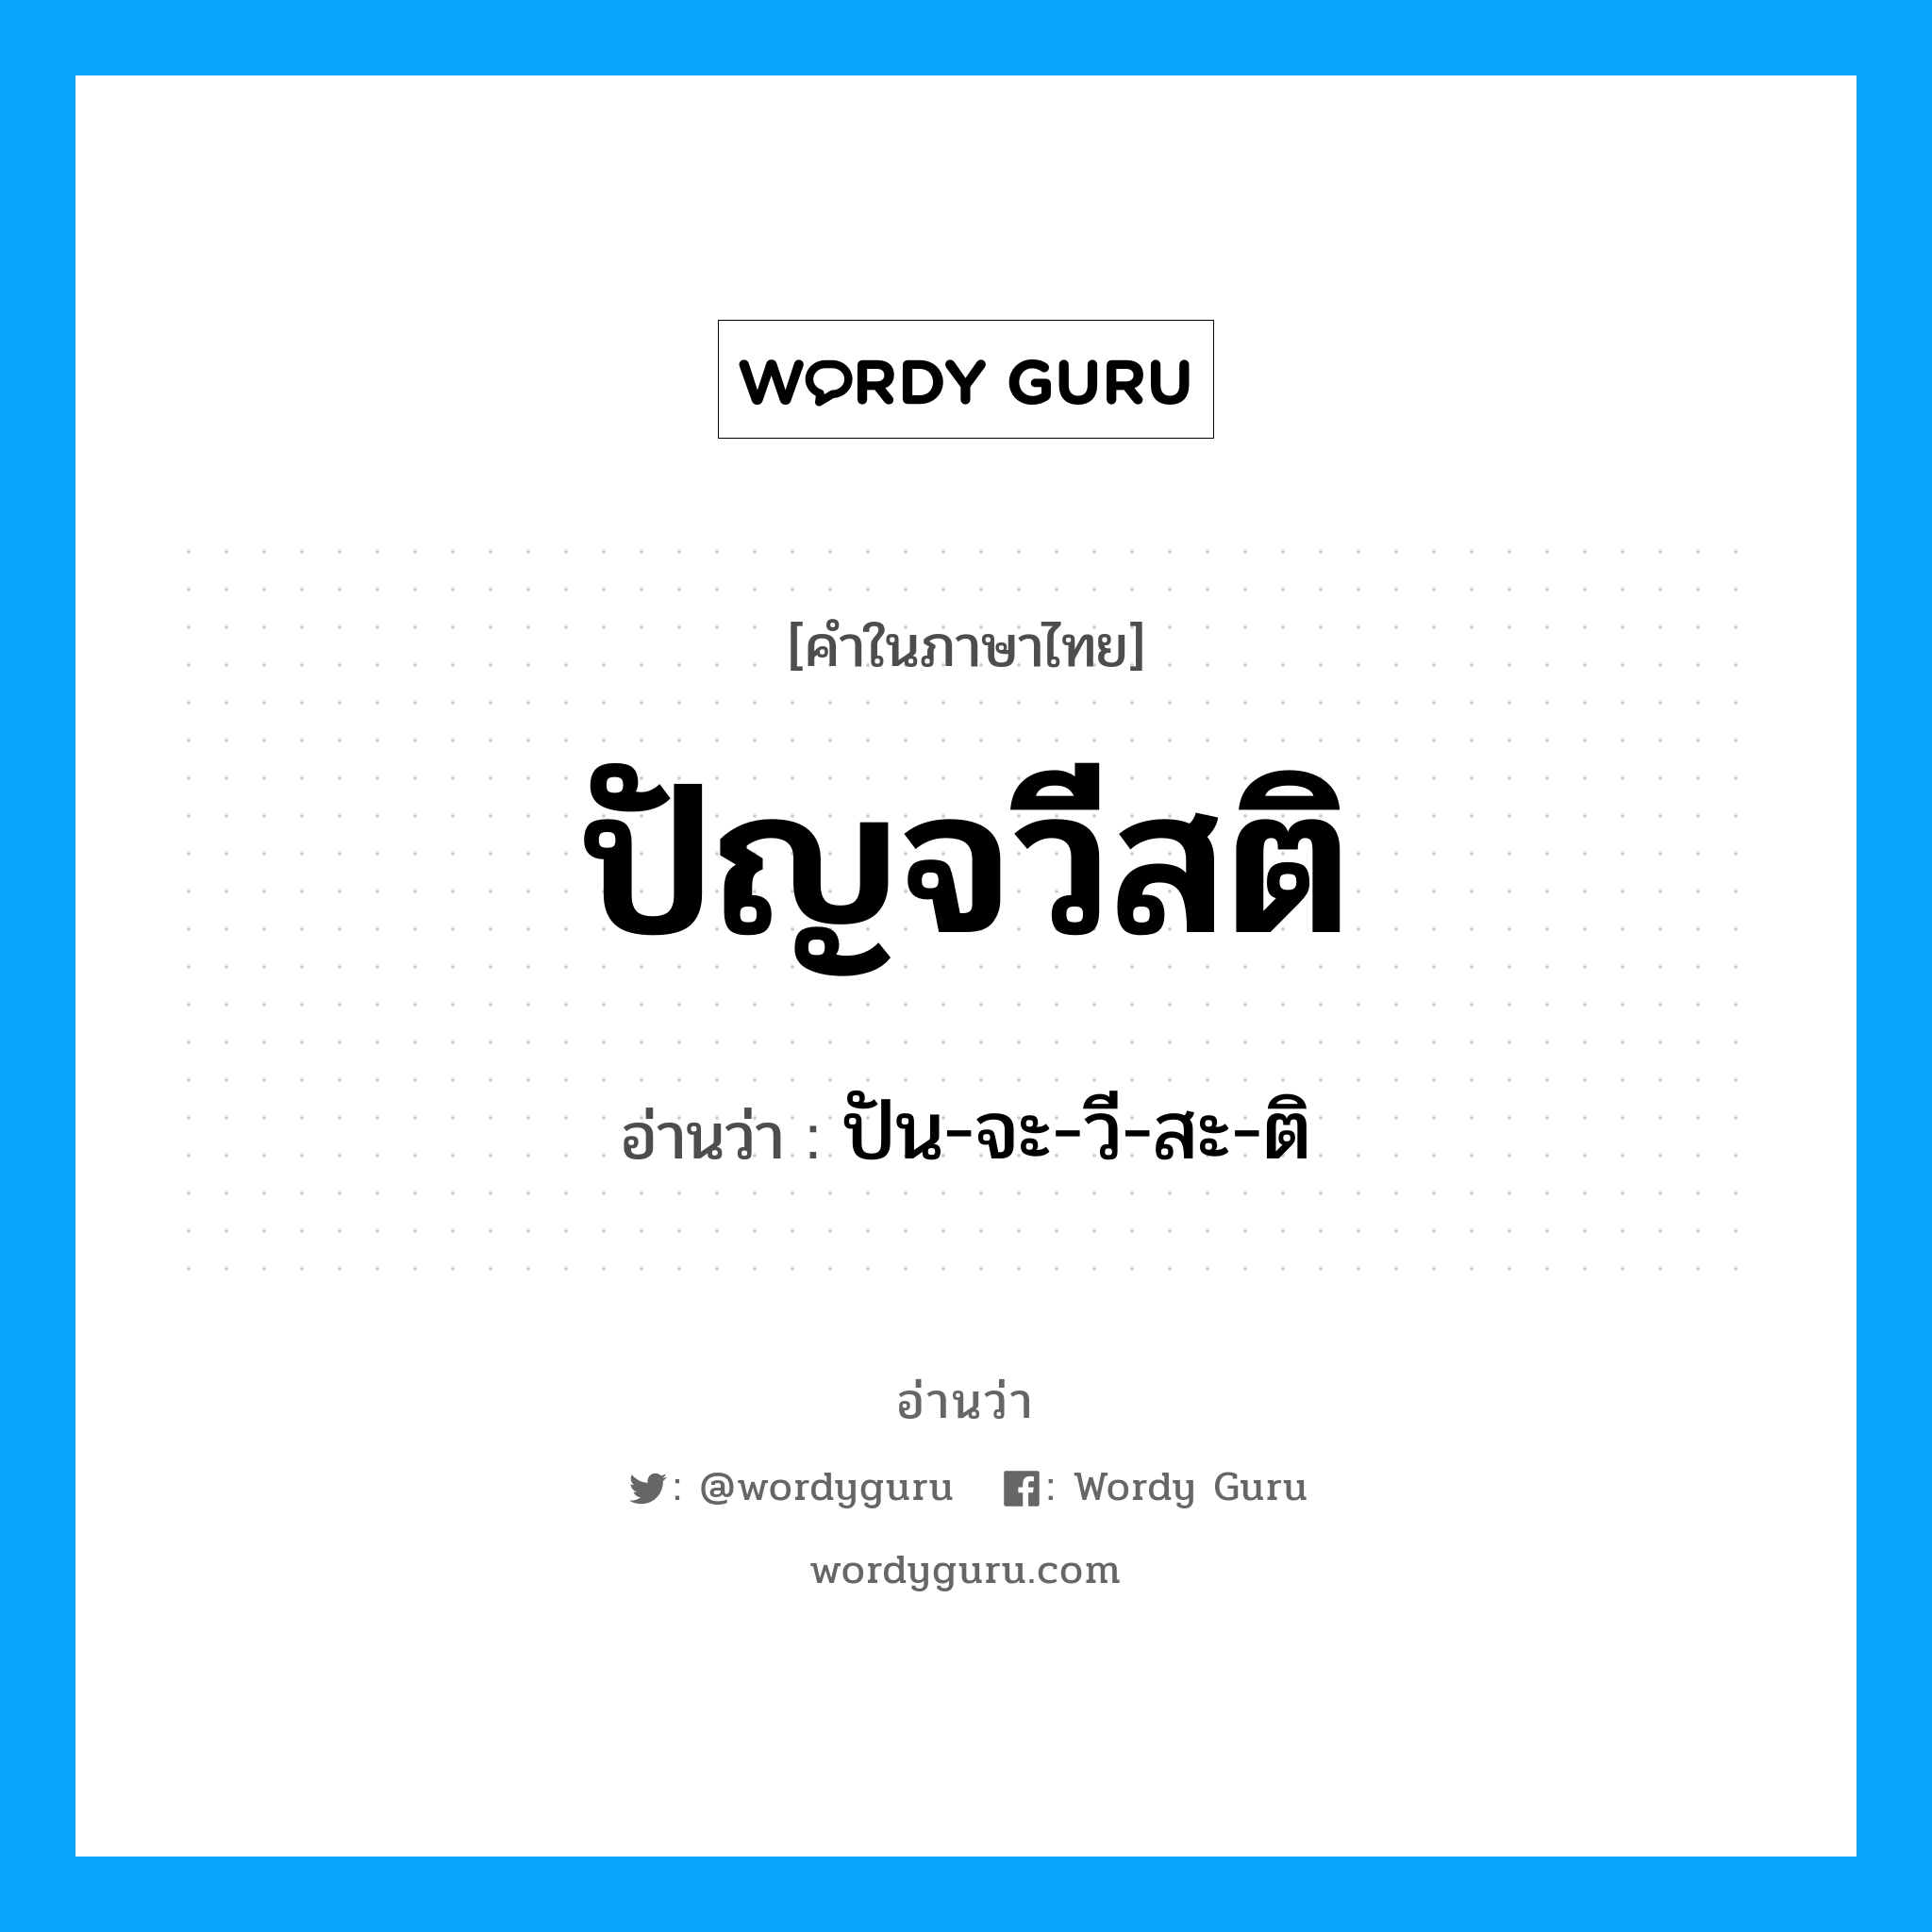 ปัน-จะ-วี-สะ-ติ เป็นคำอ่านของคำไหน?, คำในภาษาไทย ปัน-จะ-วี-สะ-ติ อ่านว่า ปัญจวีสติ